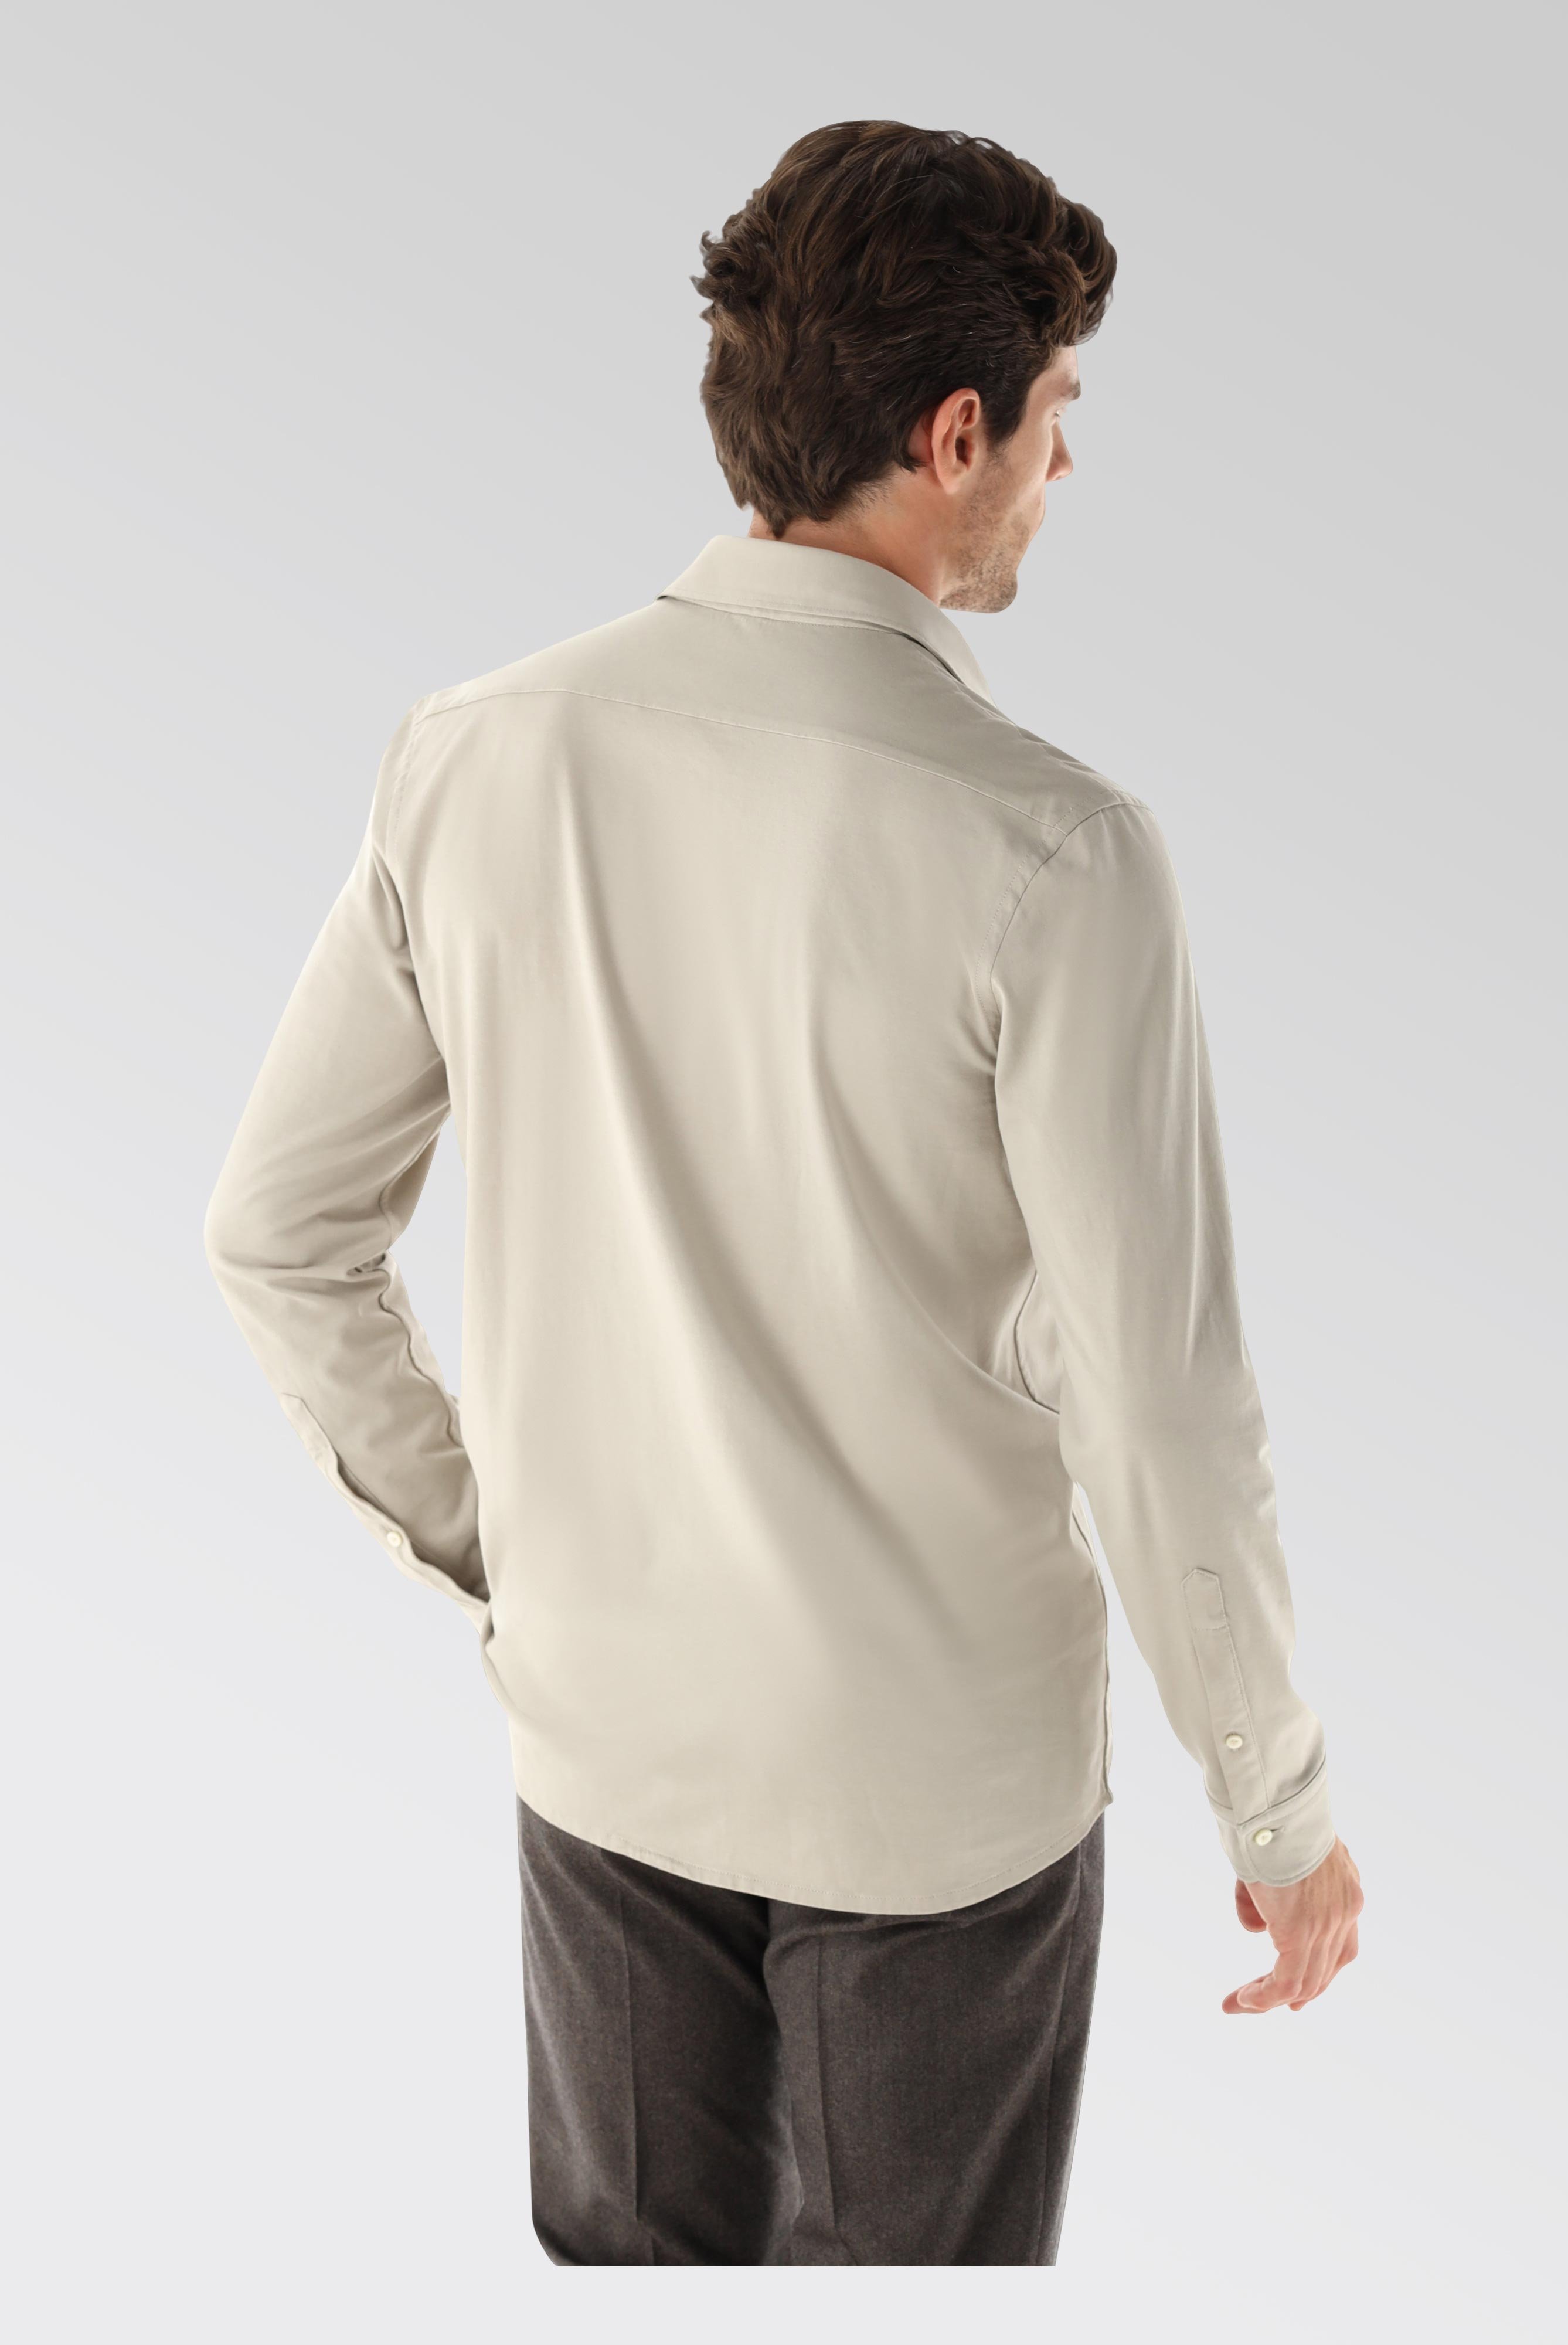 Jersey Hemden+Jersey Shirt Urban Look Slim Fit+20.1651.UC.Z20044.120.L